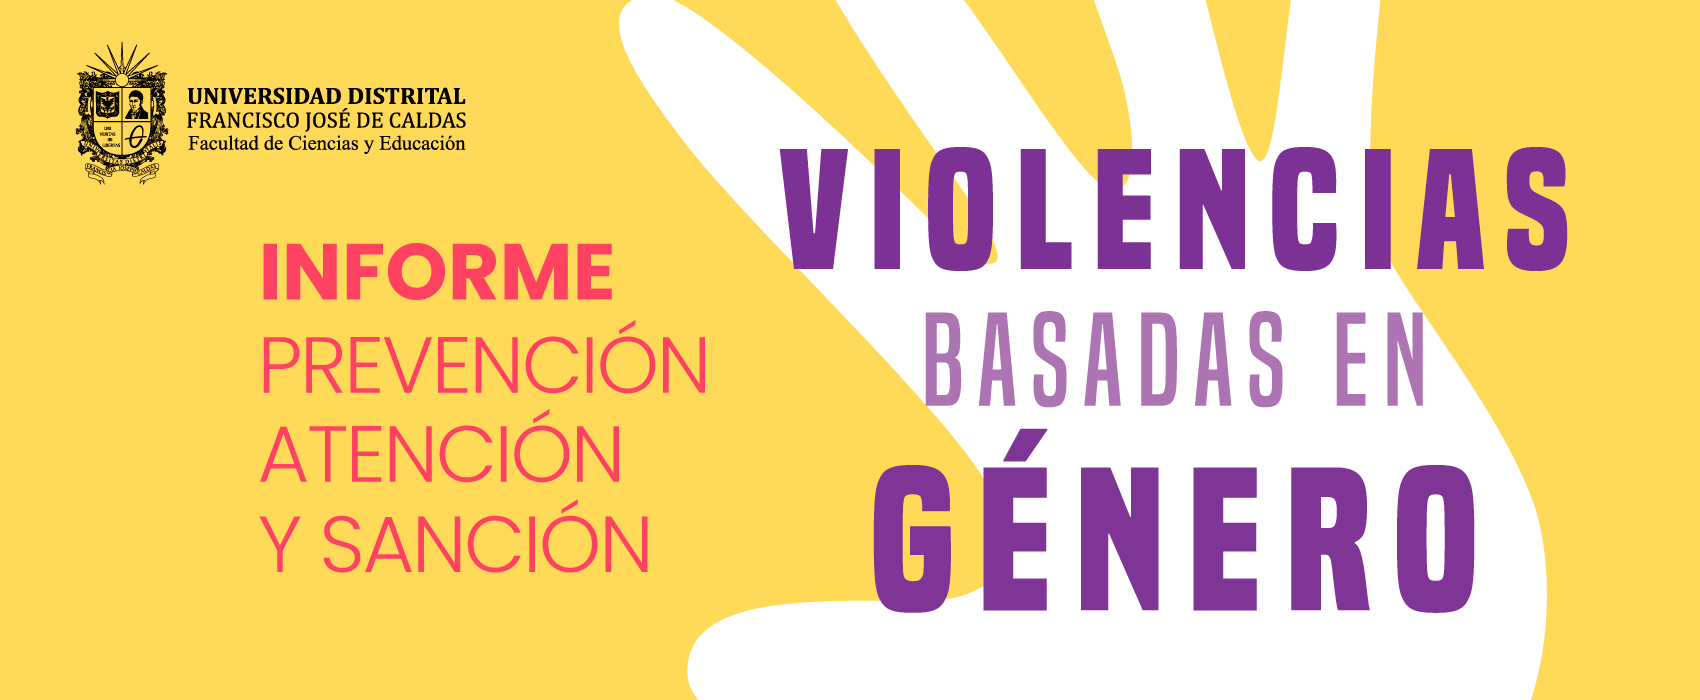 INFORME PREVENCIÓN ATENCIÓN Y SANCIÓN DE VIOLENCIAS BASADAS EN GÉNERO